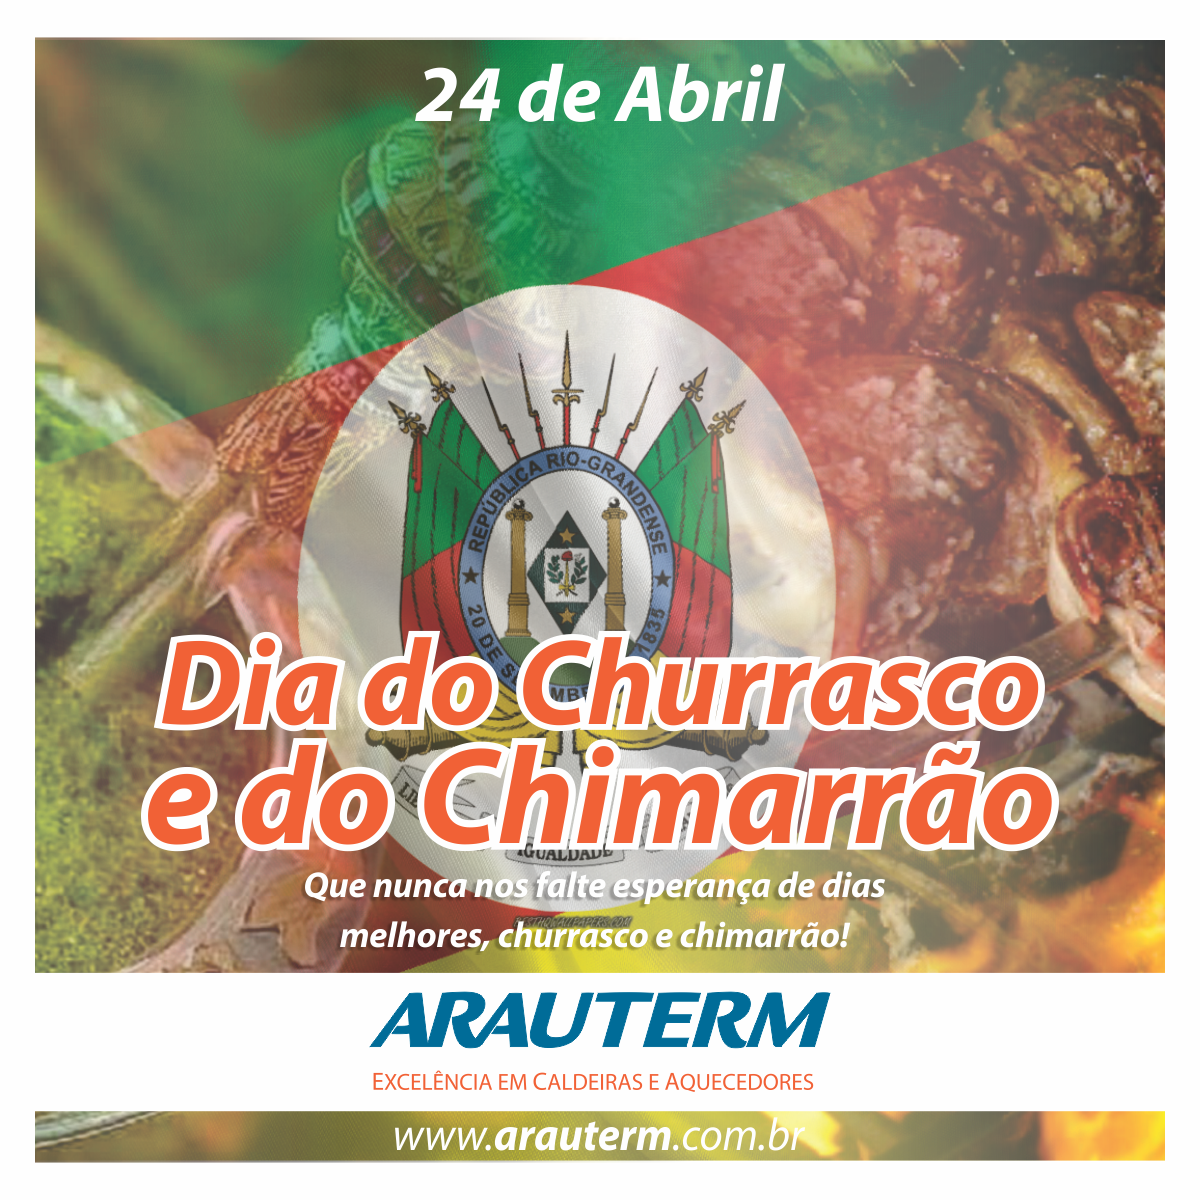 24 de Abril - Dia do Churrasco e do Chimarrão